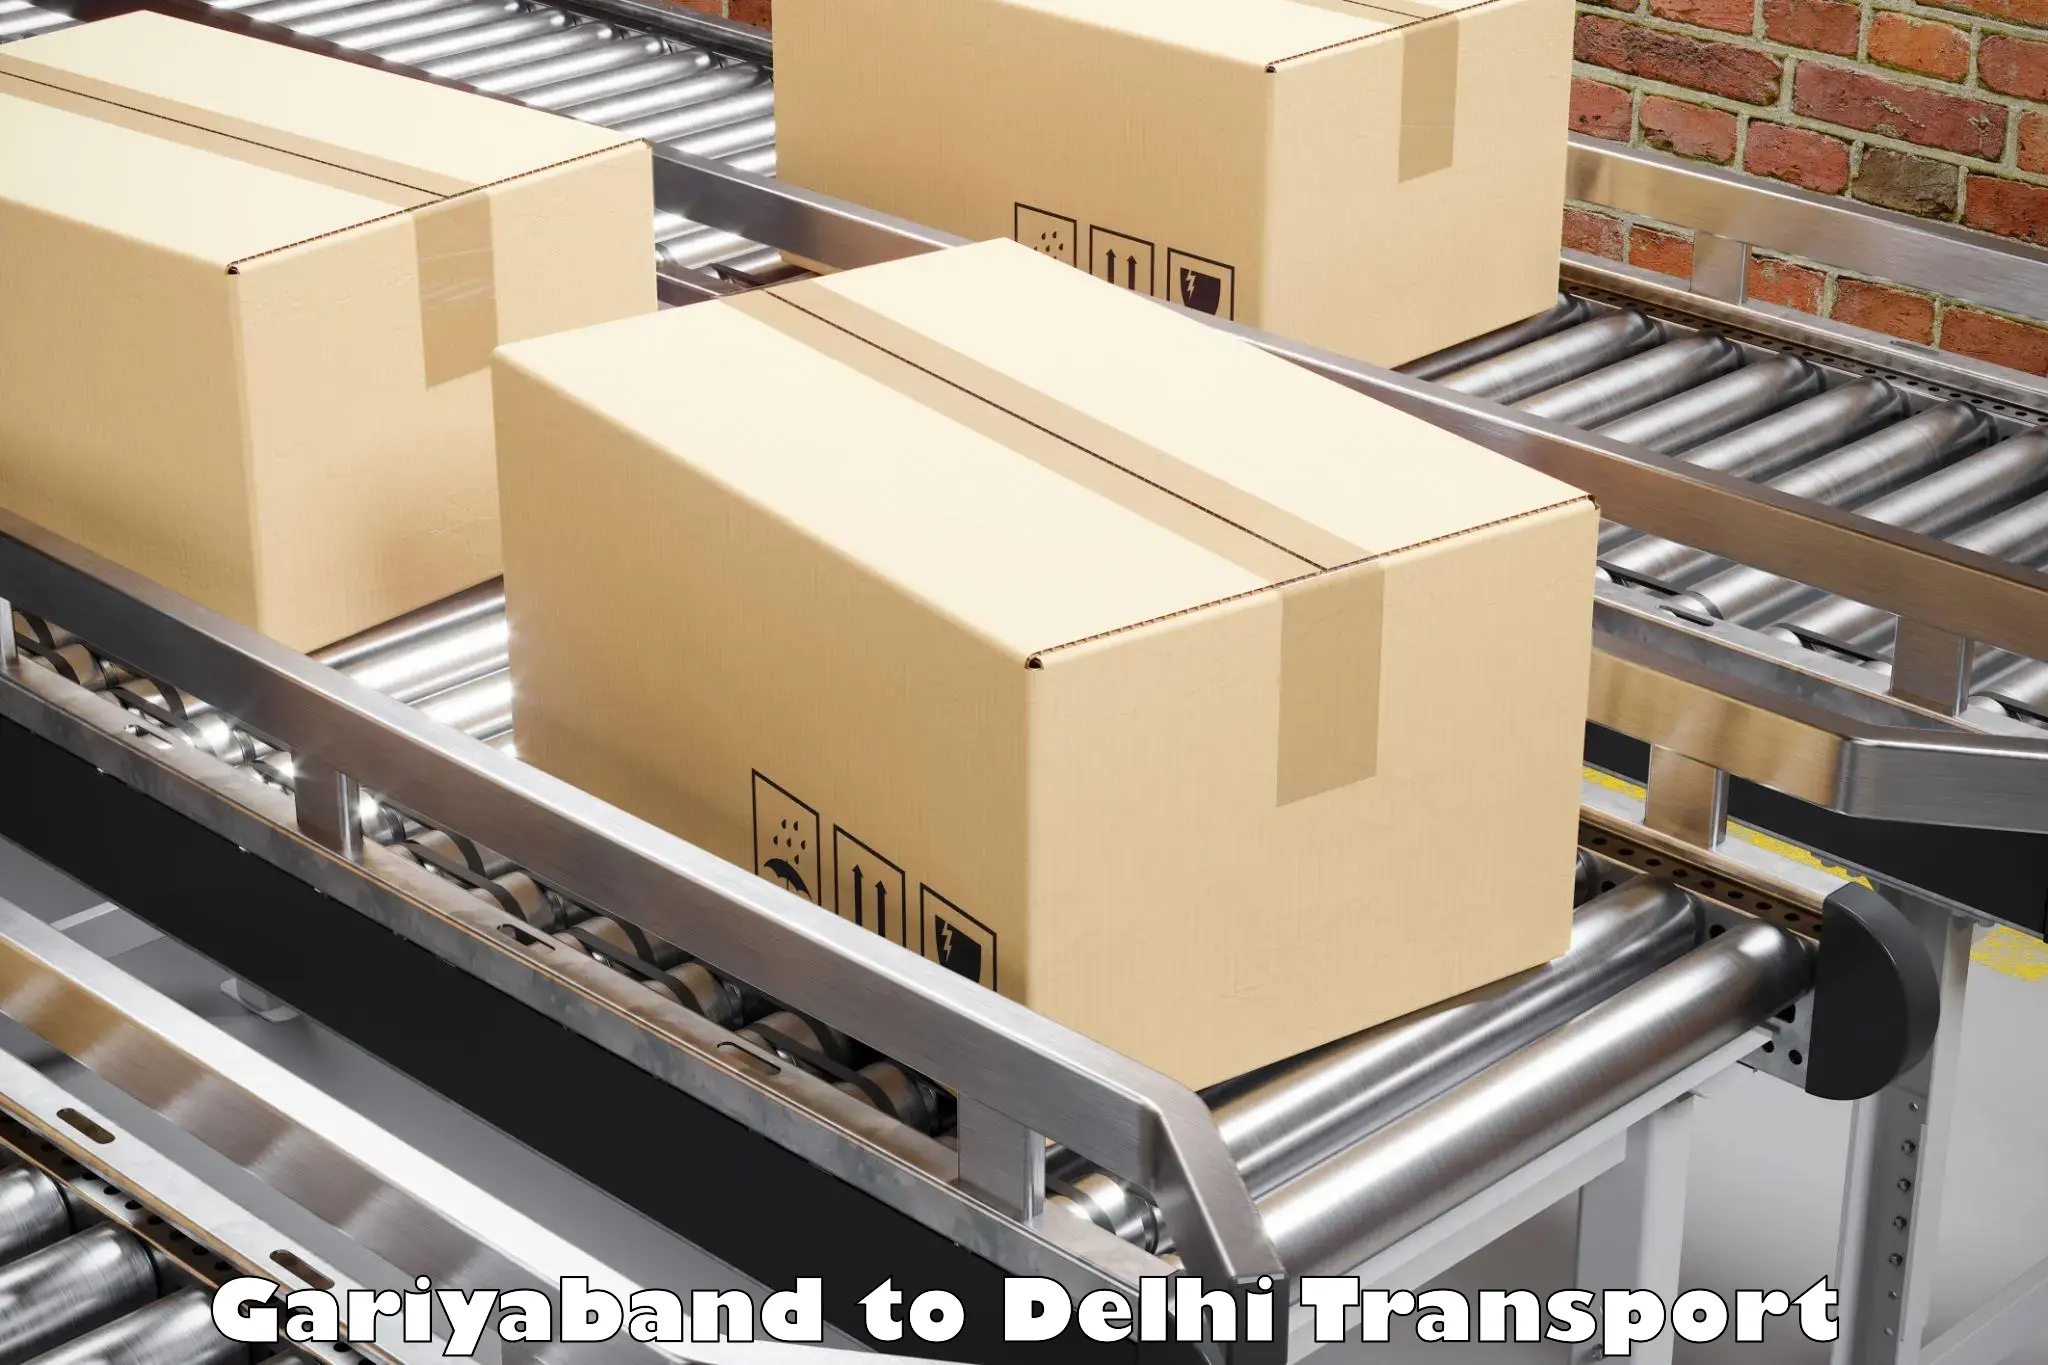 Online transport in Gariyaband to IIT Delhi